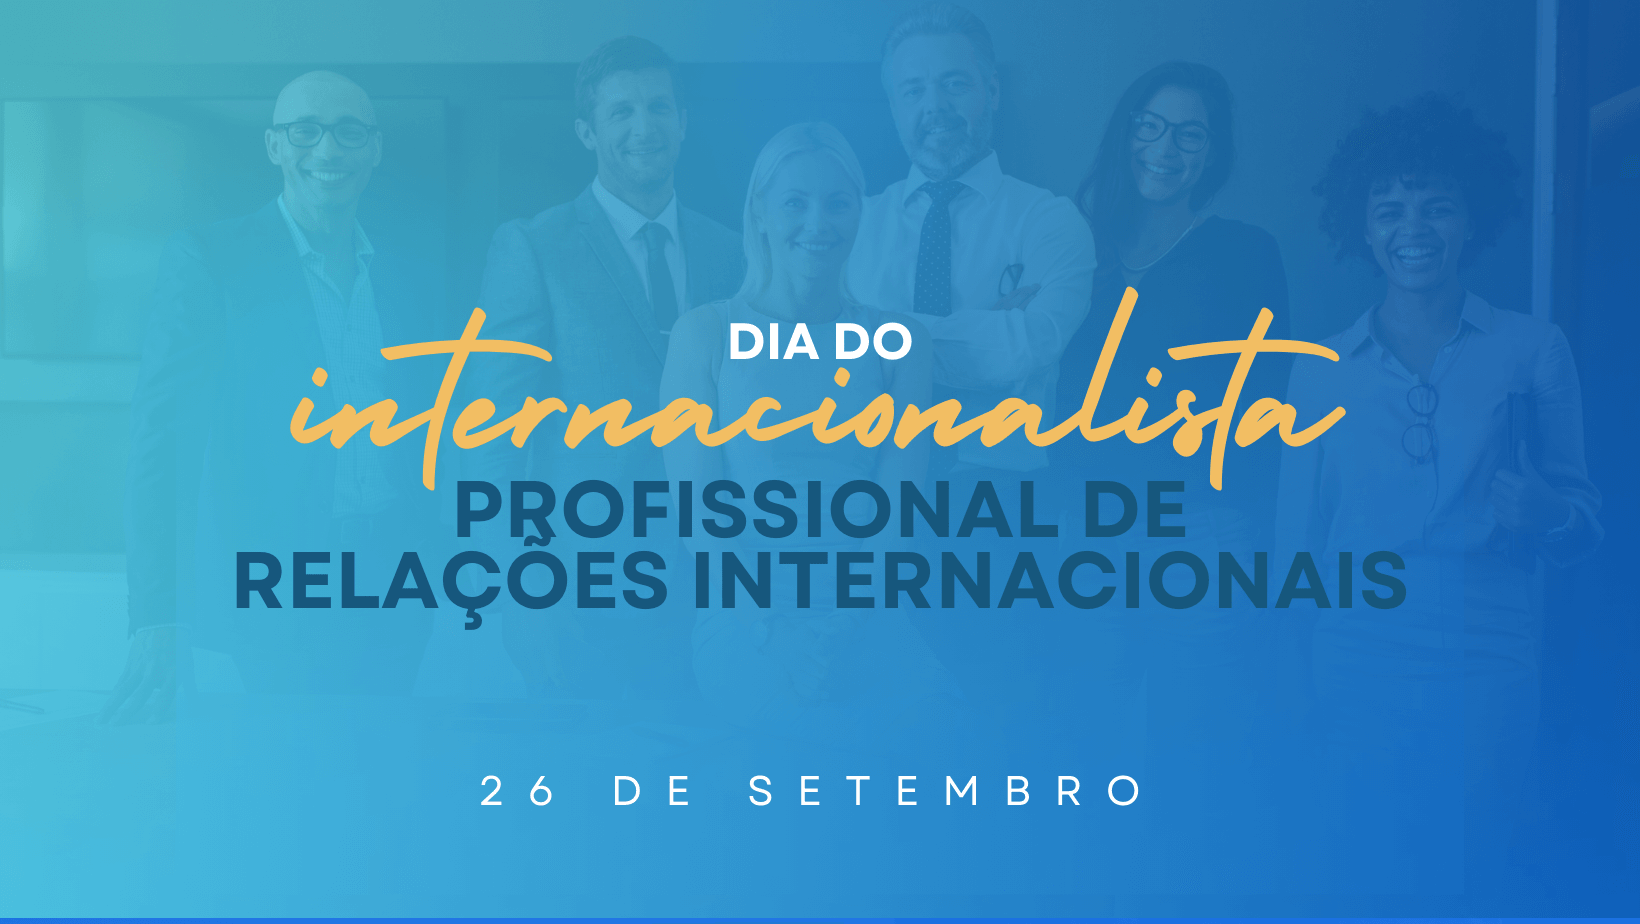 Dia do Internacionalista - Dia do Profissional de Relações Internacionais